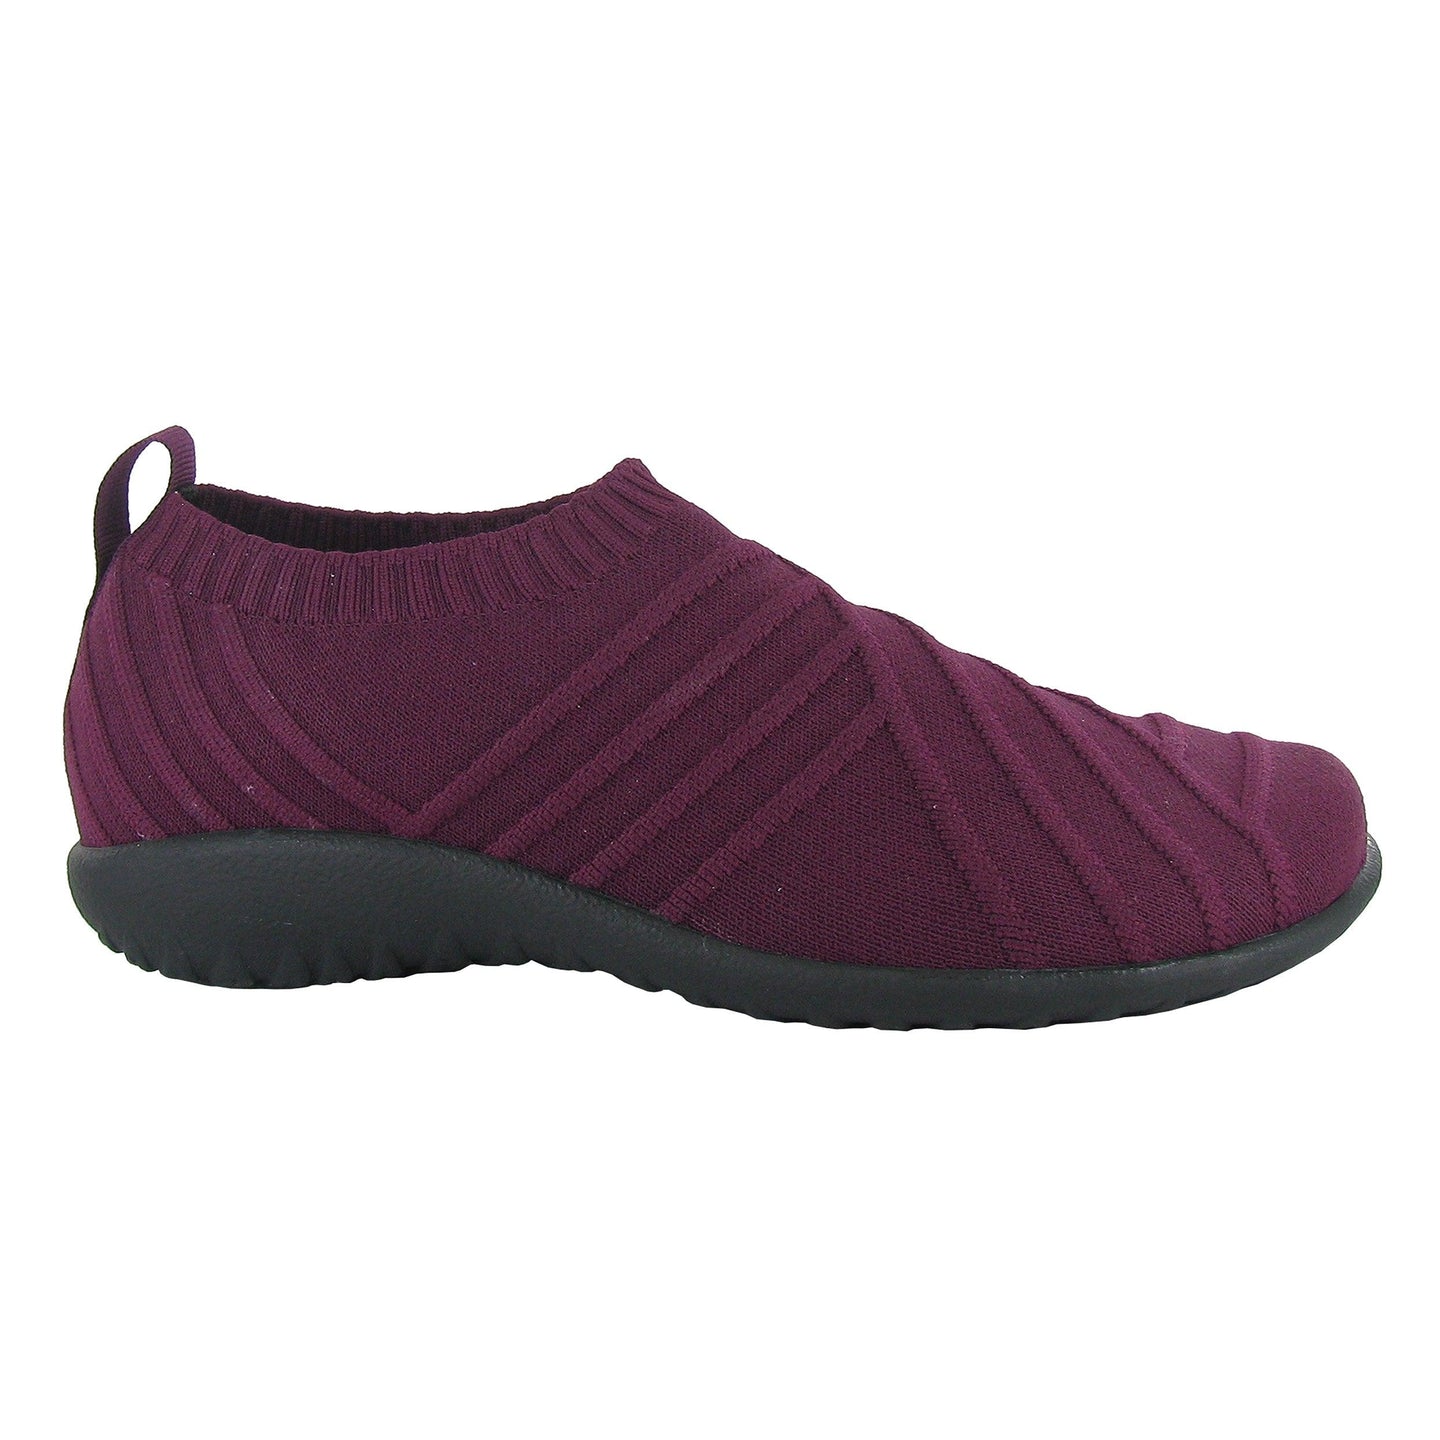 Okahu - Naot - Karavel Shoes - karavelshoes.com